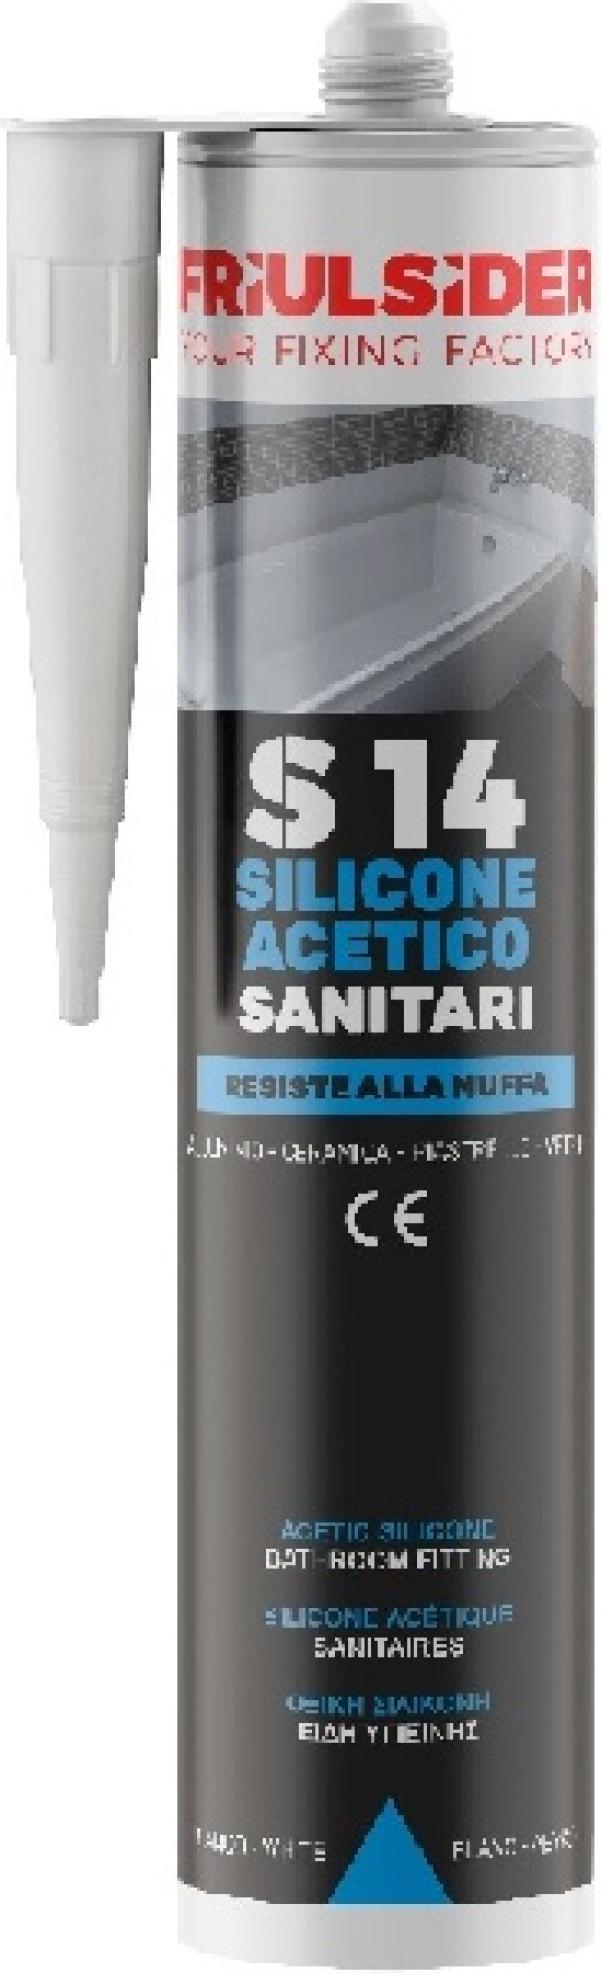 Silicone acetico sanitari trasparente 280 ml Friulsider S1400